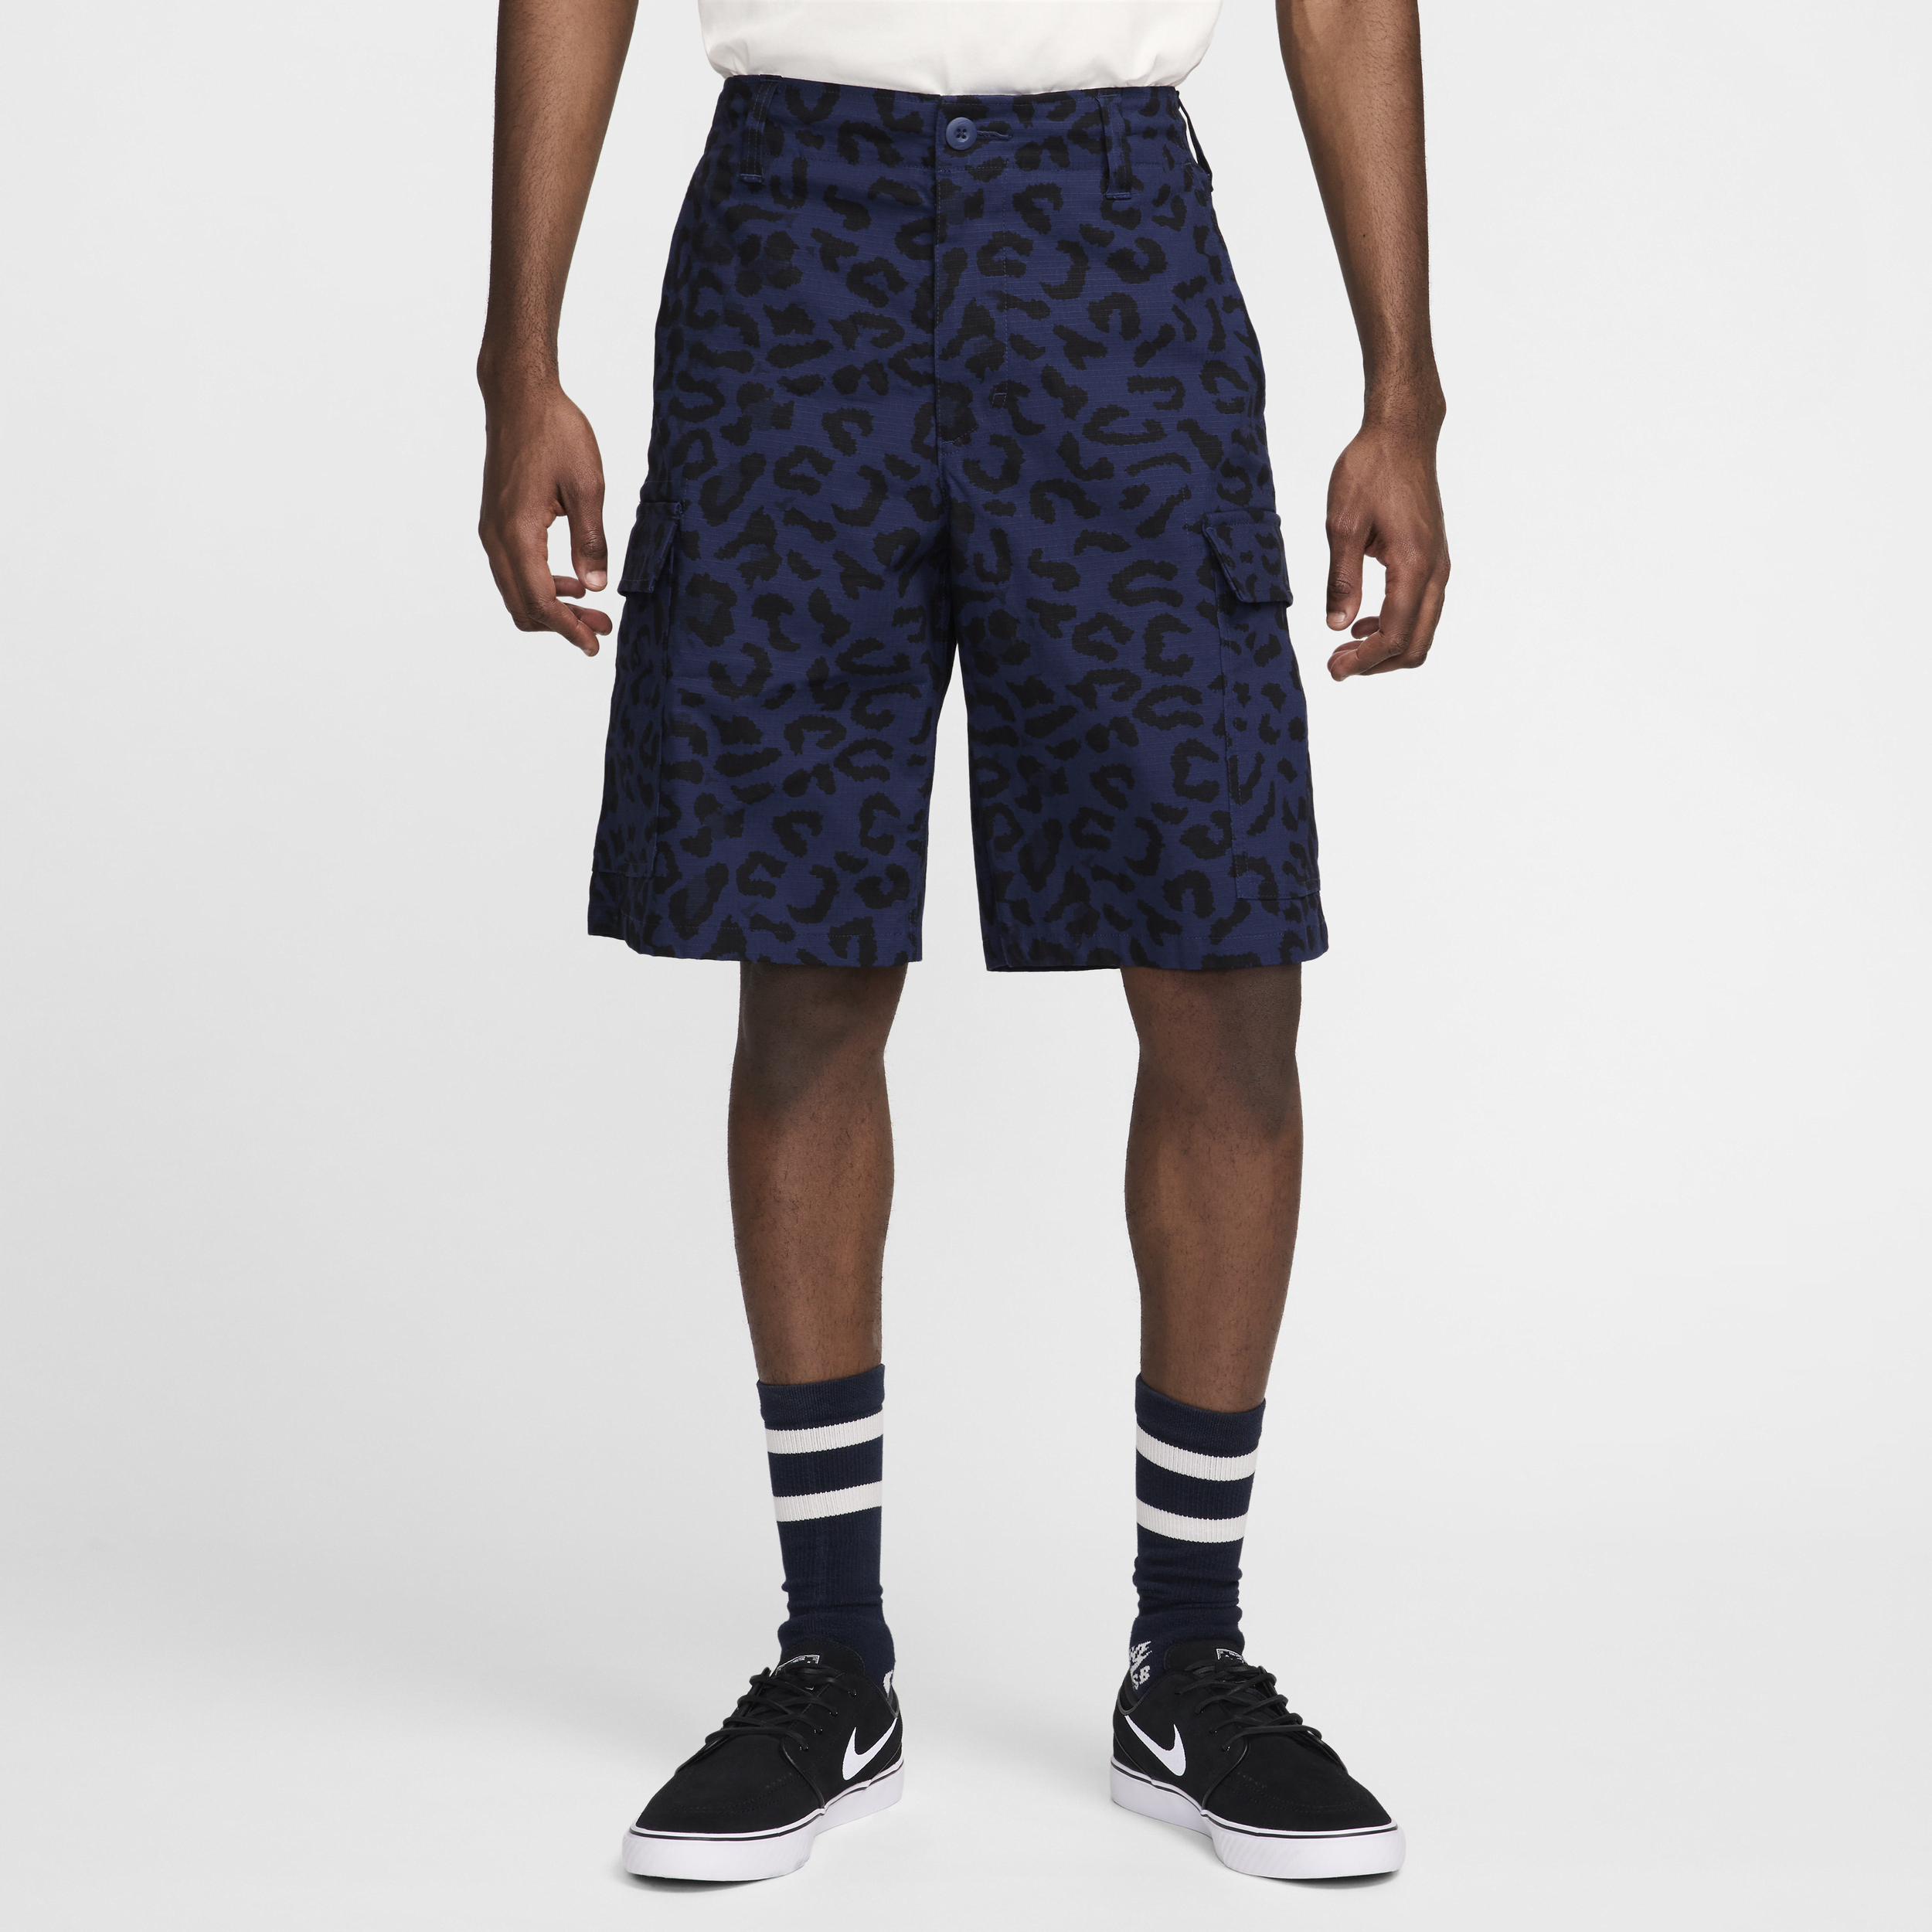 Nike SB Kearny Pantalón corto con estampado por toda la prenda - Hombre - Azul